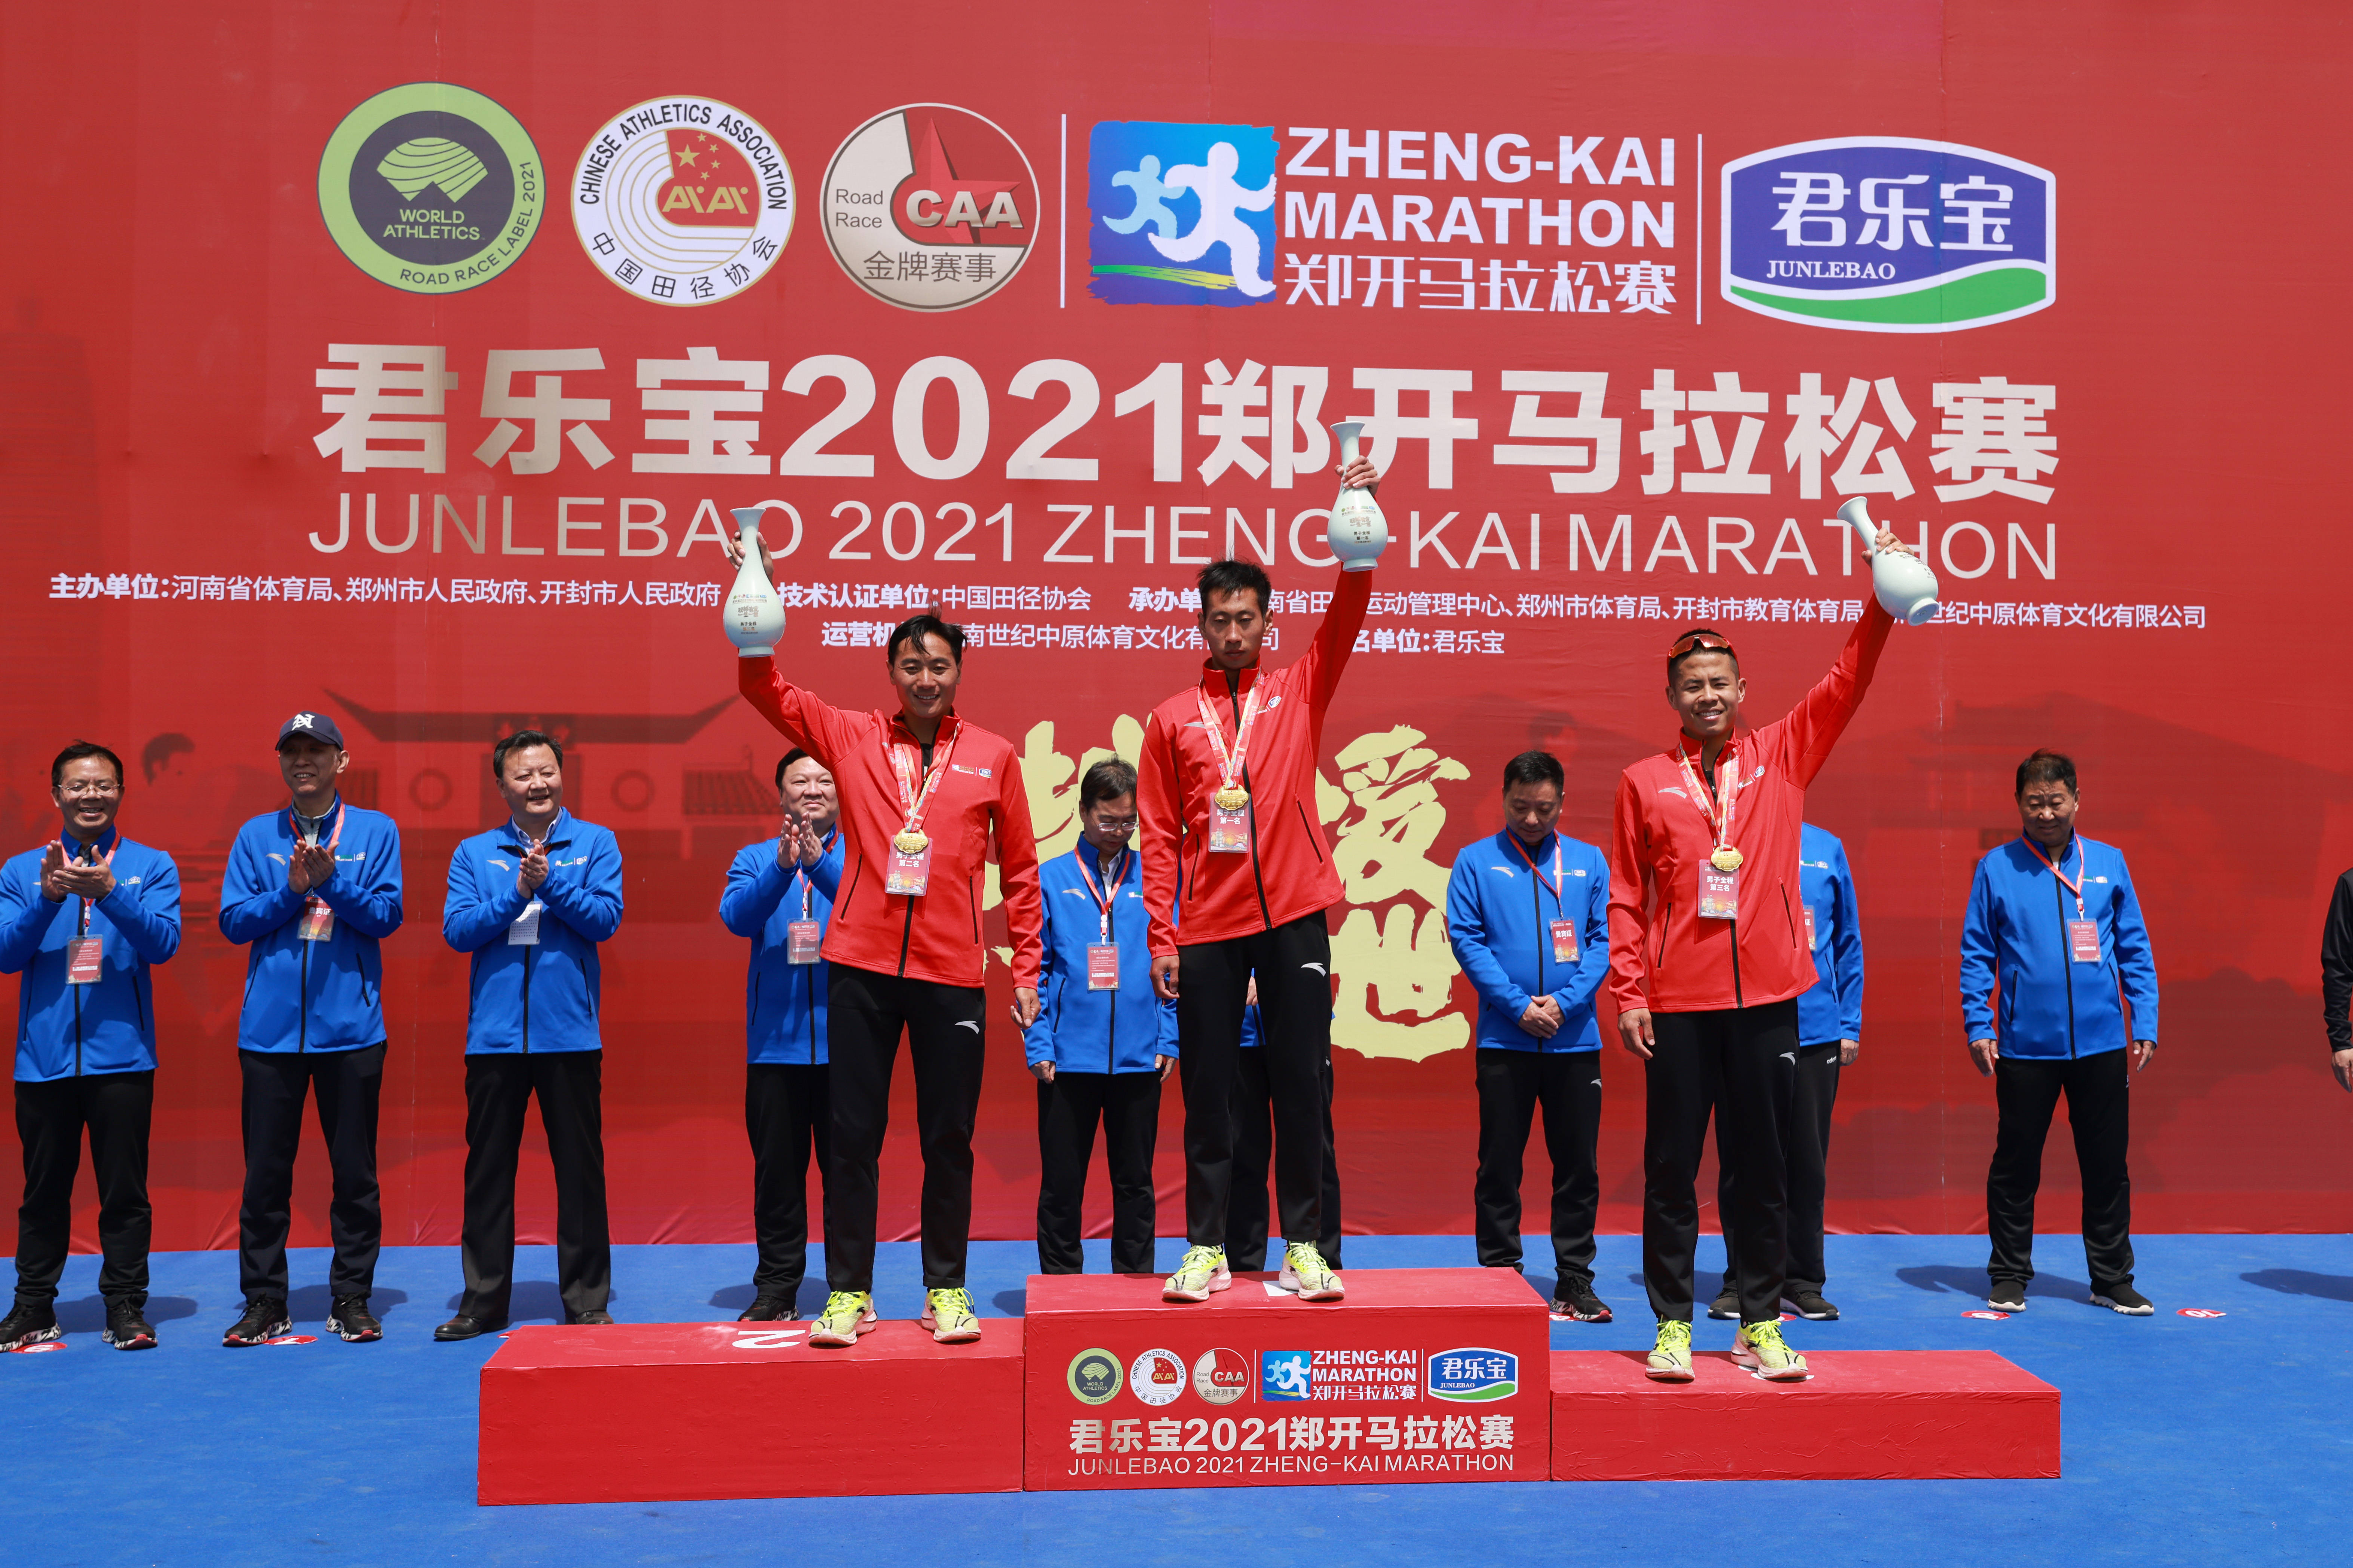 马拉松冠军李淑云(中),亚军吴杨杨(左)和季军王雪莹在颁奖仪式上合影